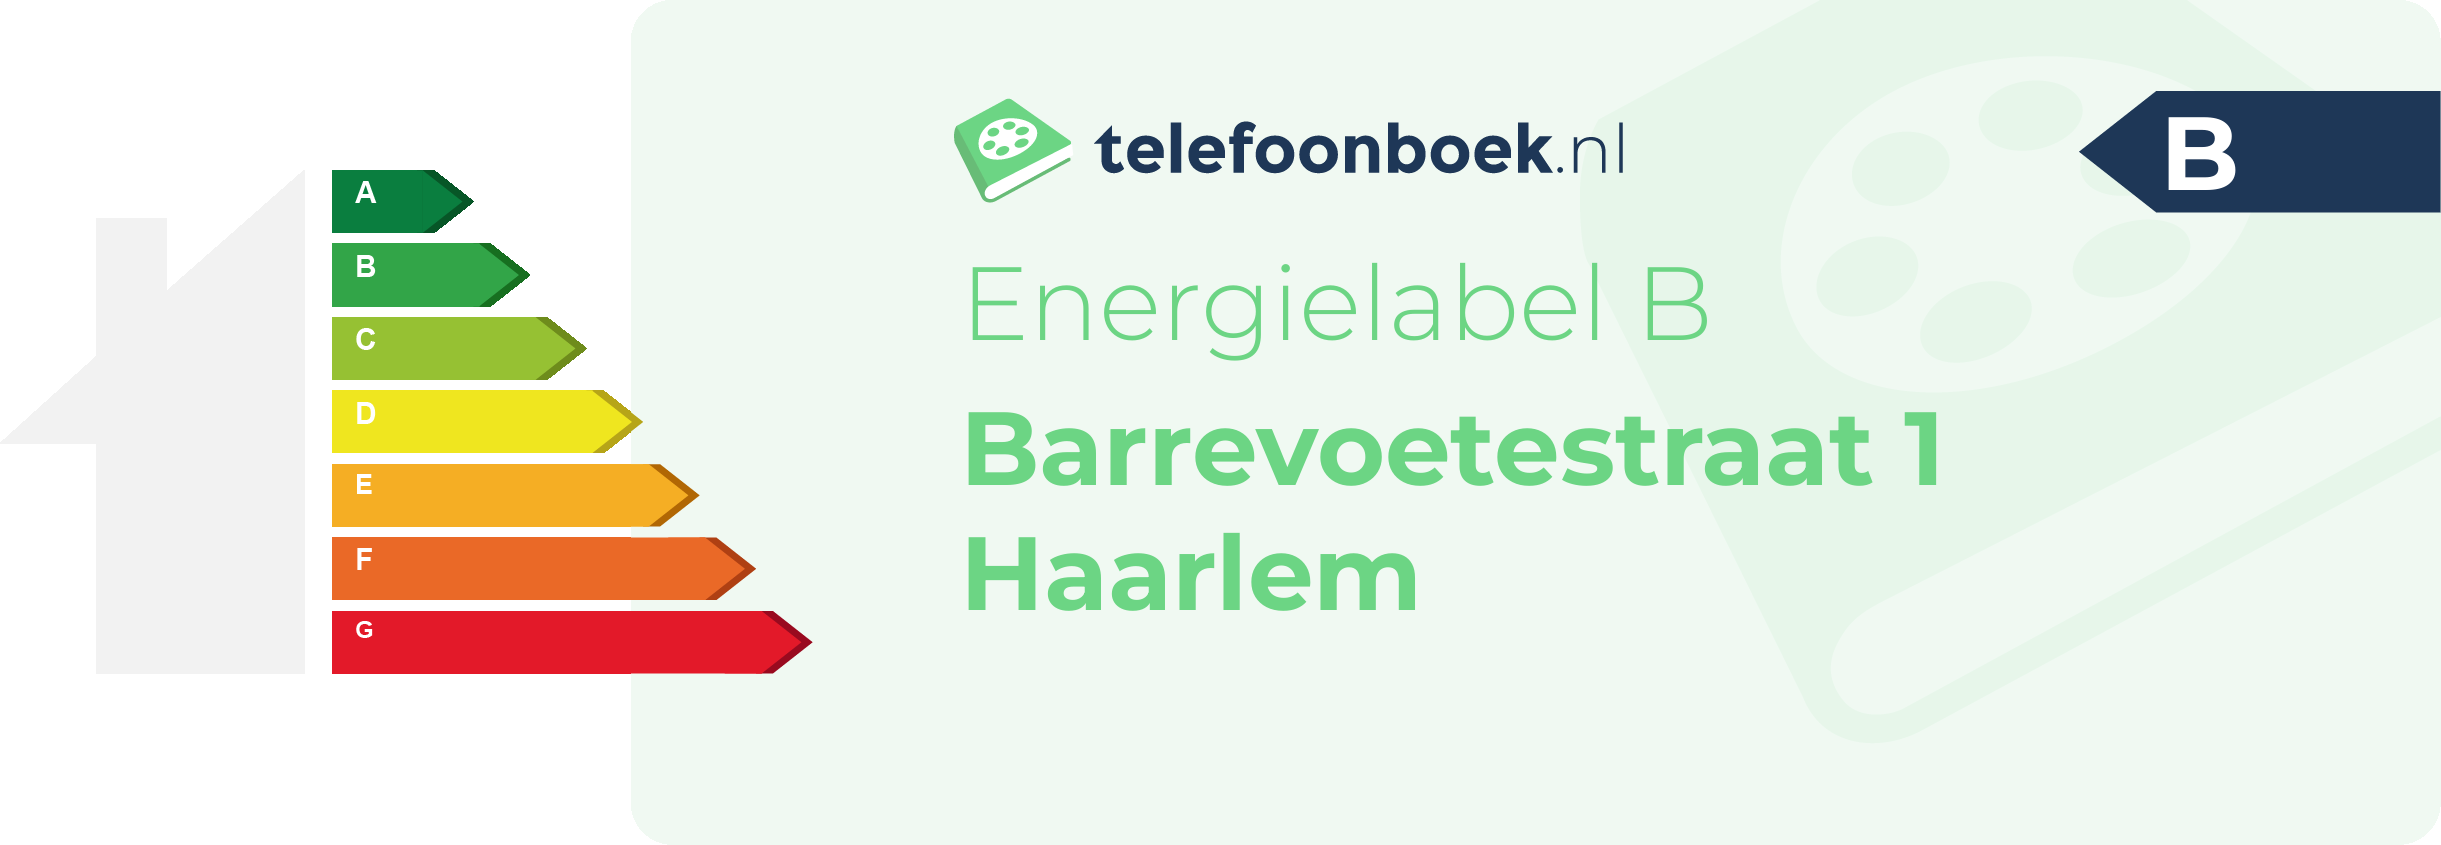 Energielabel Barrevoetestraat 1 Haarlem